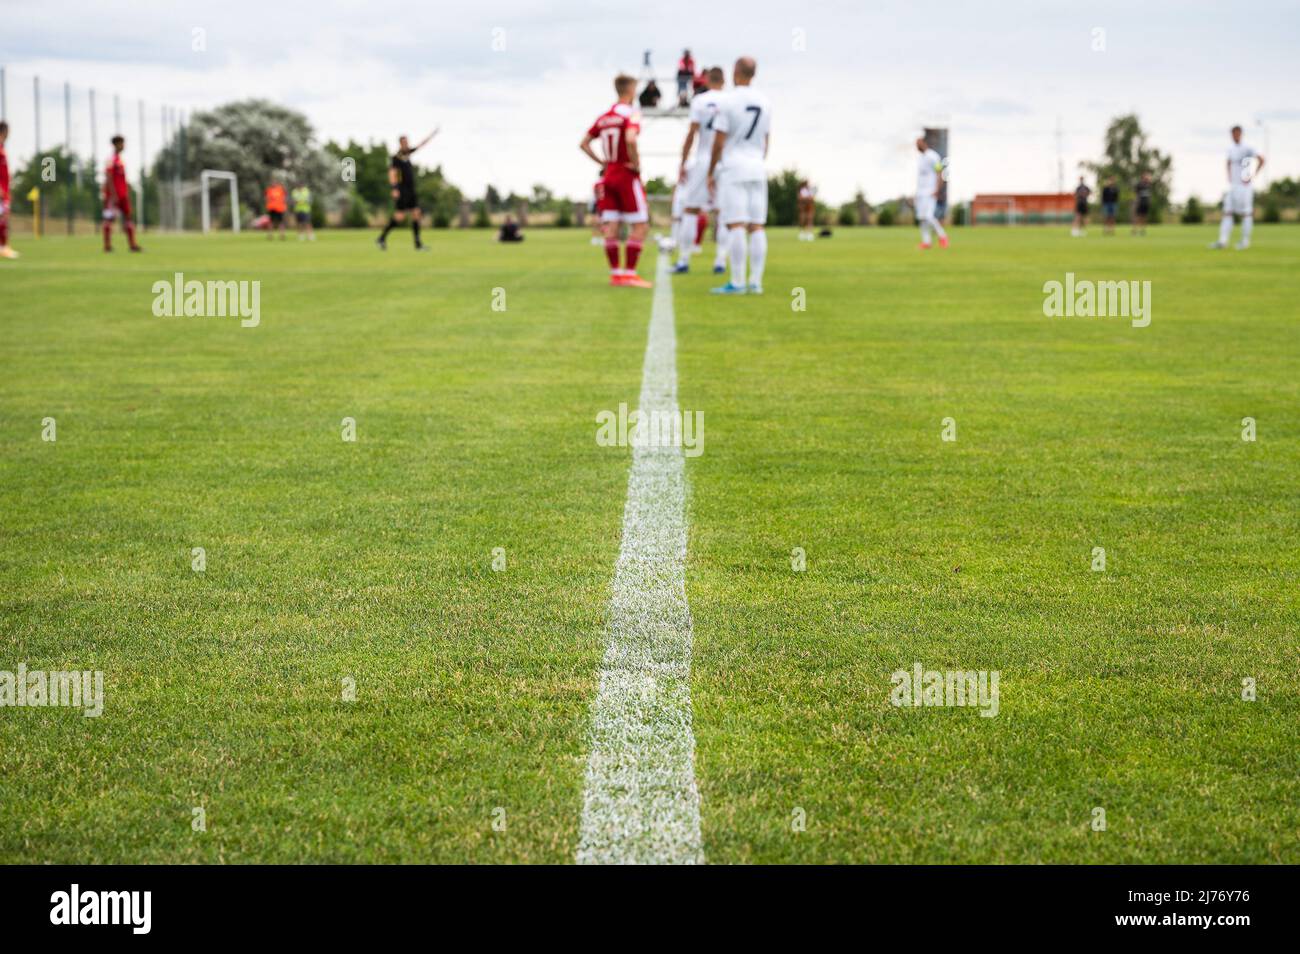 Fußball-Mittellinie, Fußballer während des Spiels im Hintergrund Stockfoto